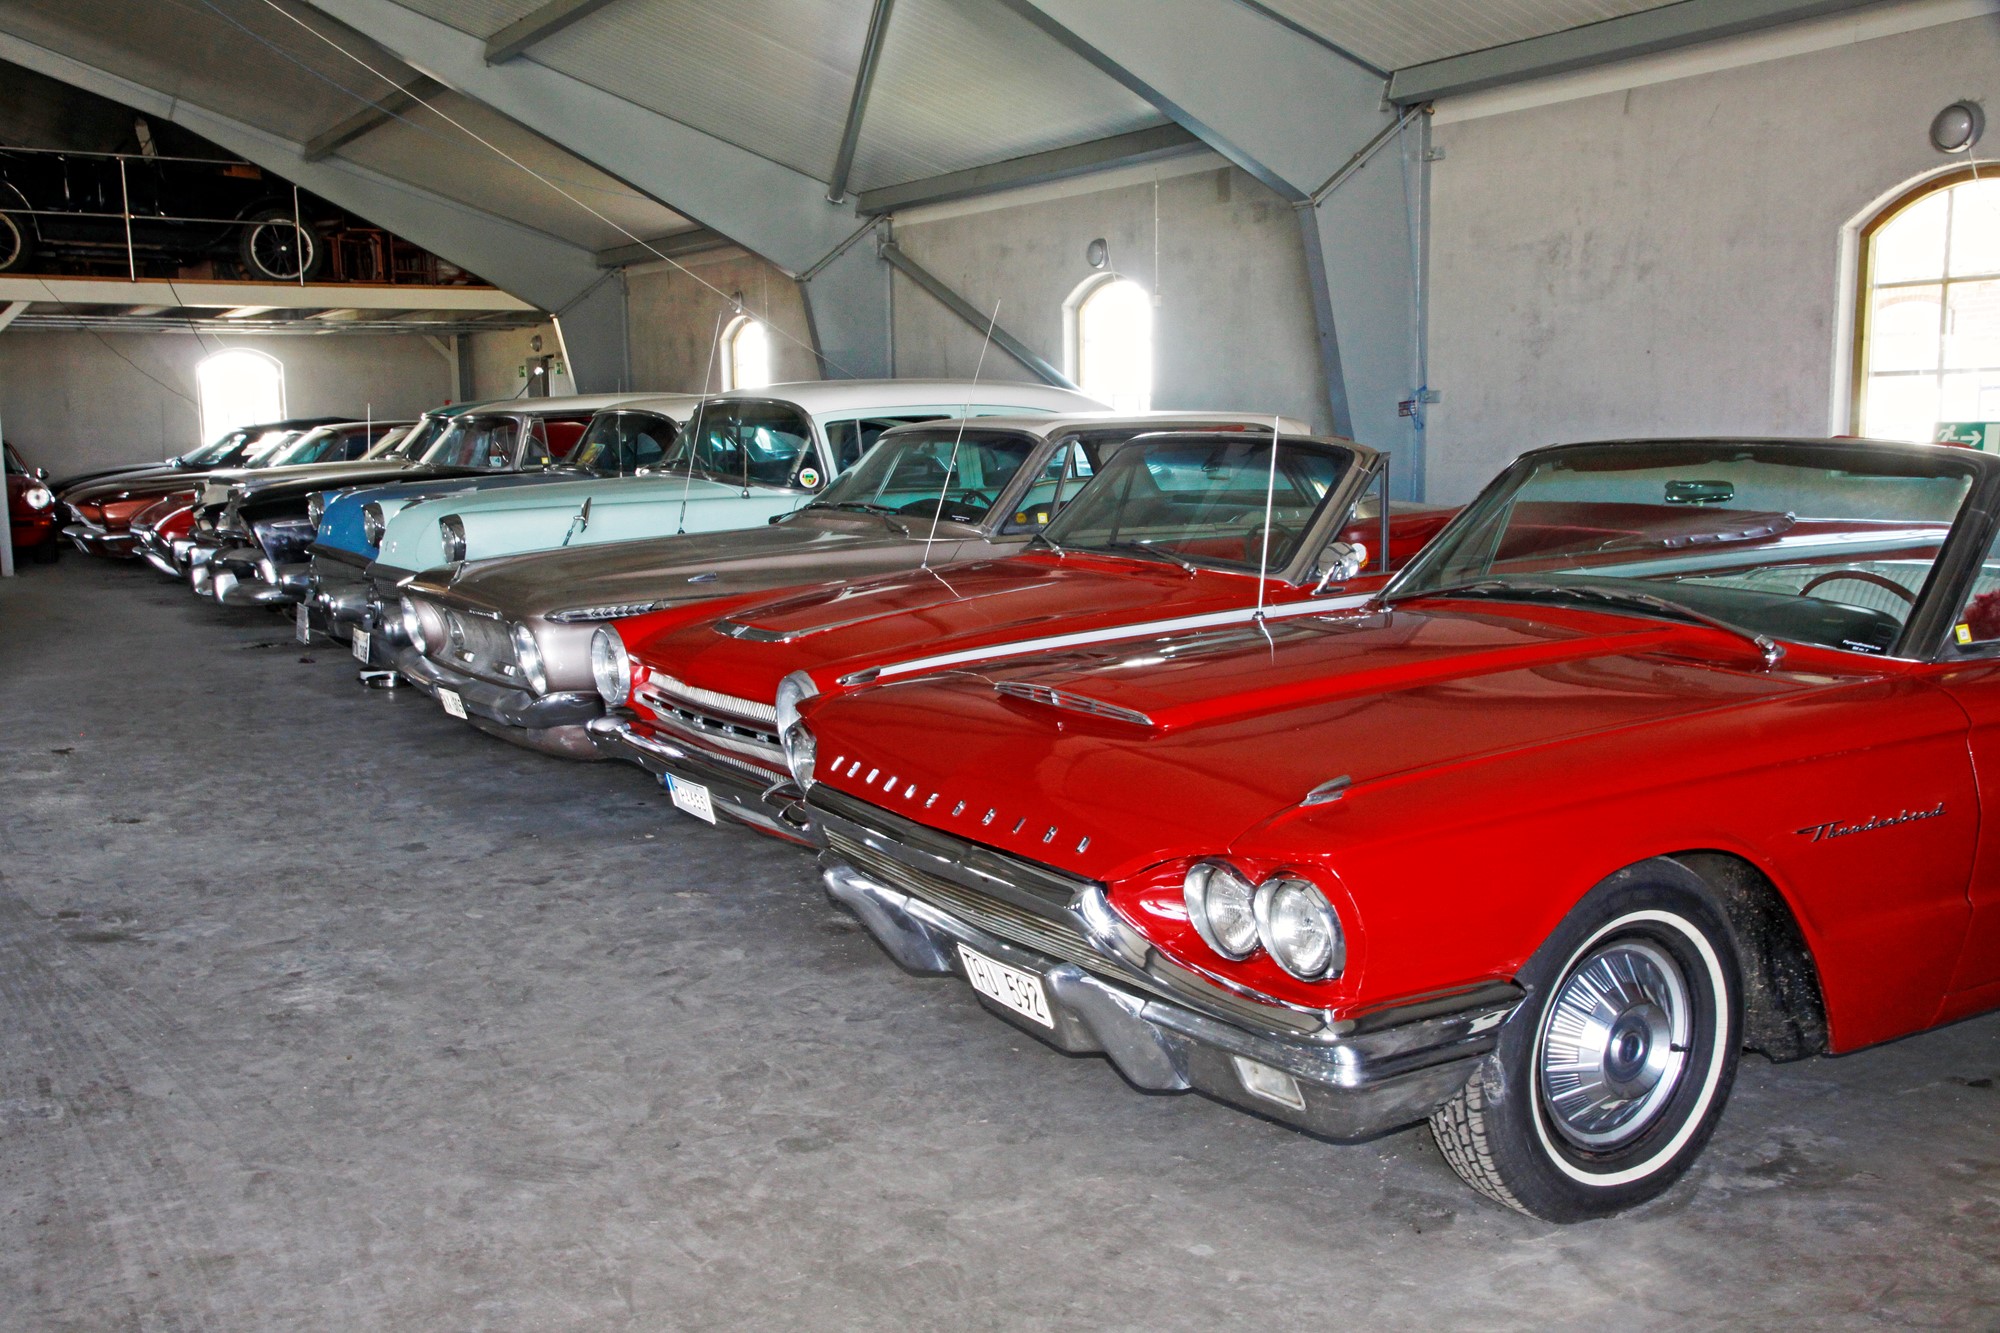 Thunderbirden och Dodge Dart-cabben är båda importerade. Den kopparfärgade bilen som tittar fram är en svensksåld Plymouth Fury från 1962.